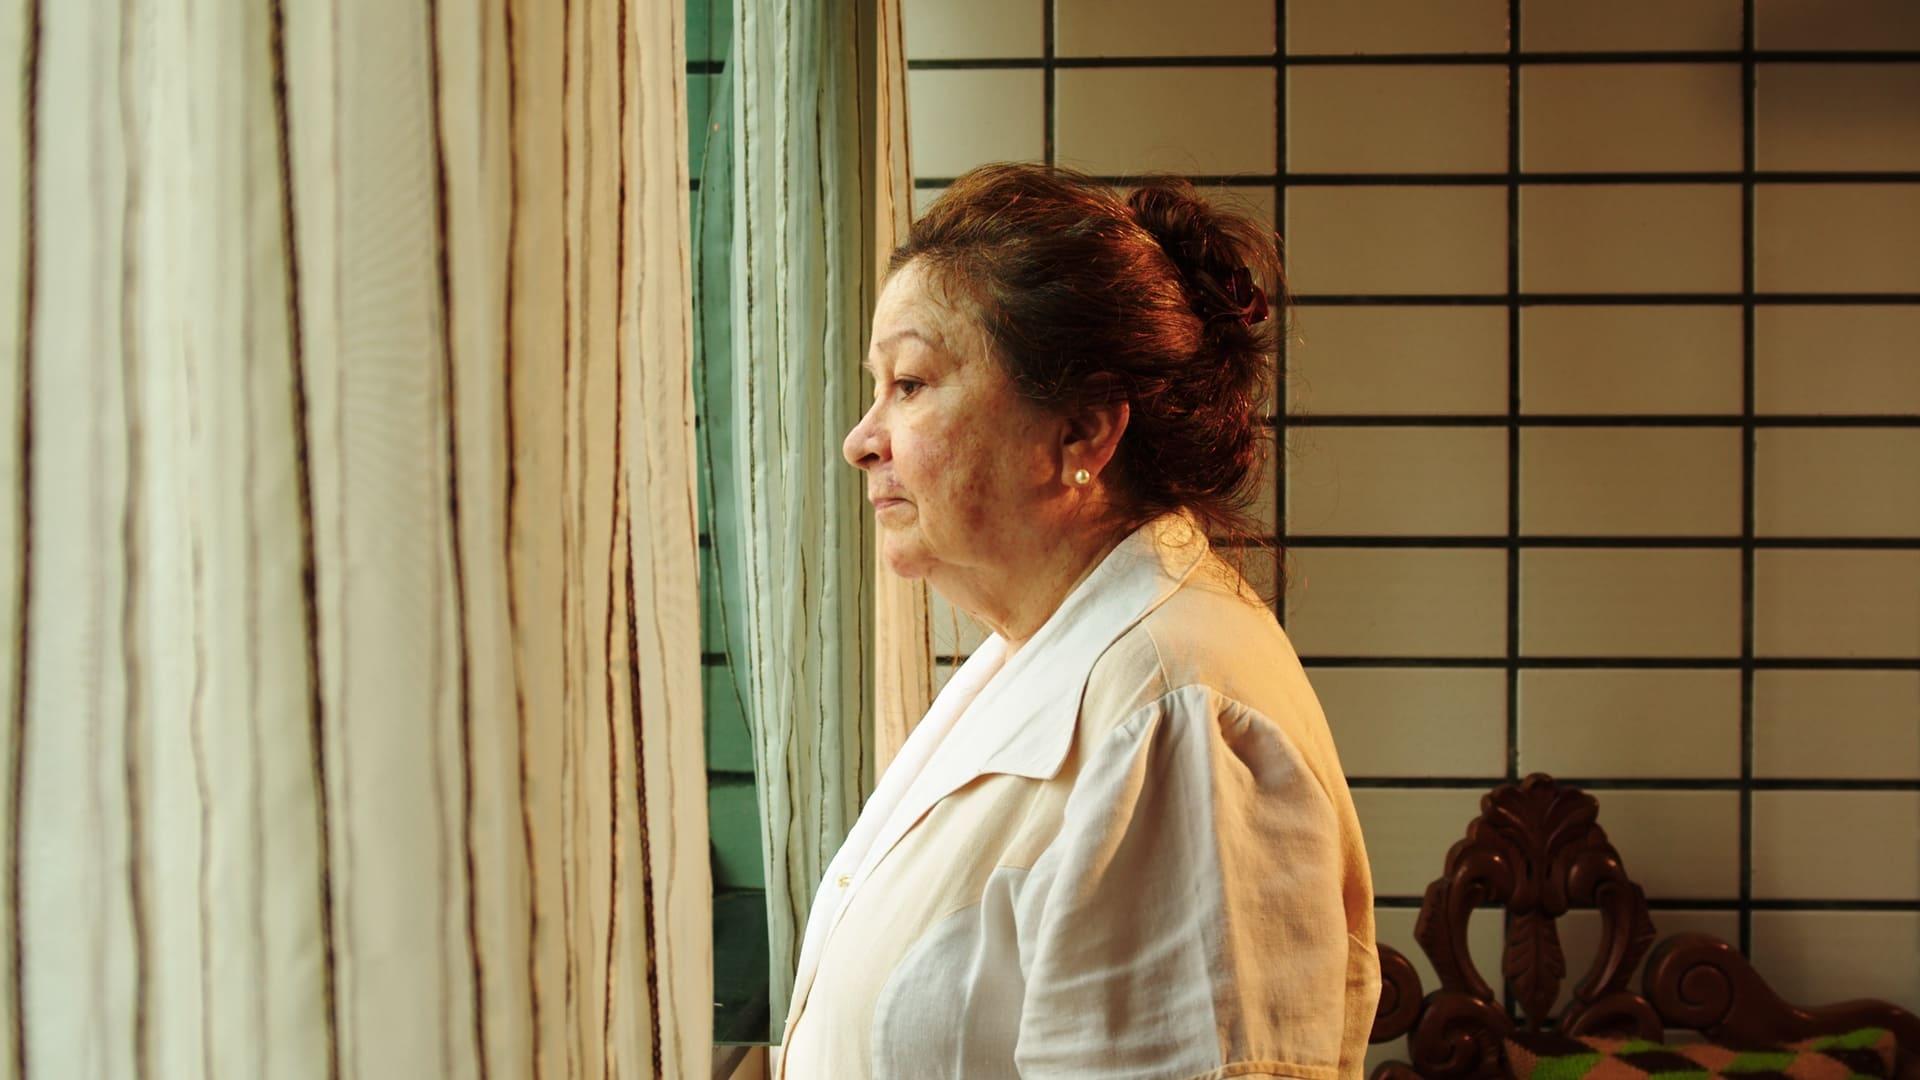 Neidinha Castelo Branco interpreta Joelma, uma mulher de 66 anos que descobre uma traição do marido em meio ao lockdown